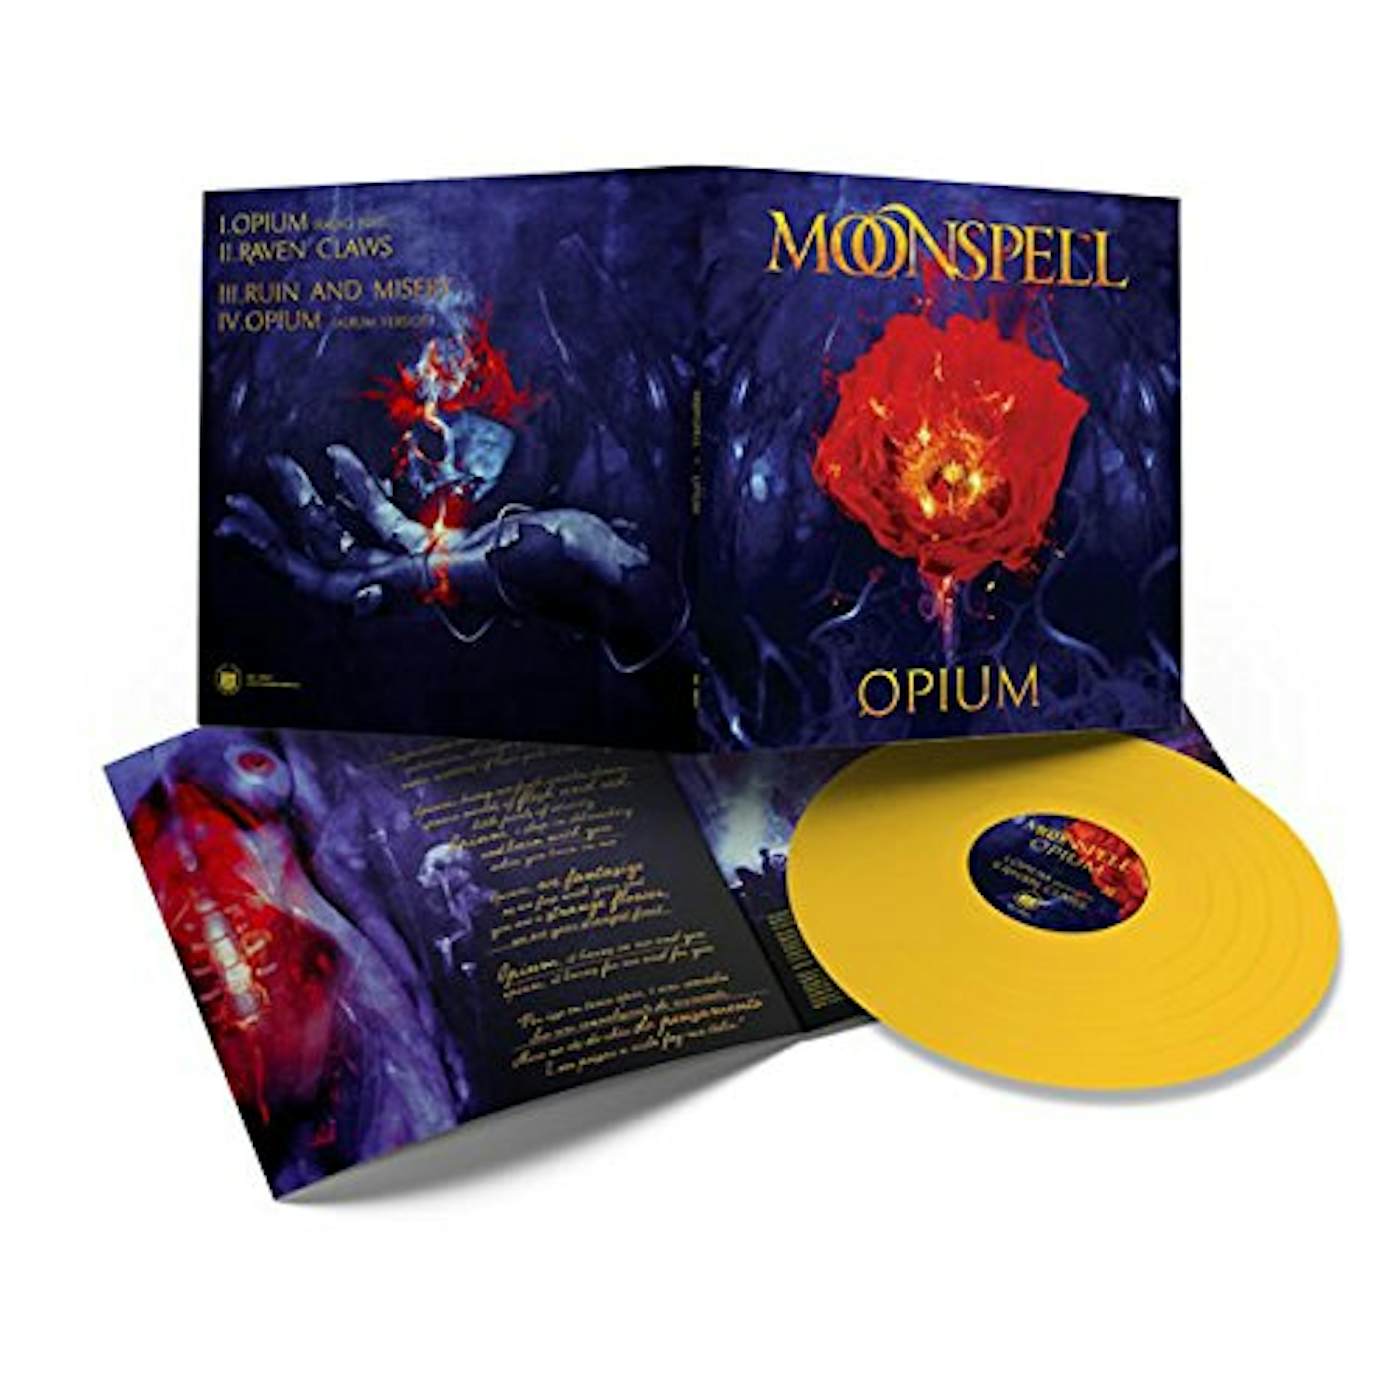 Moonspell OPIUM (MUSTARD YELLOW VINYL) Vinyl Record